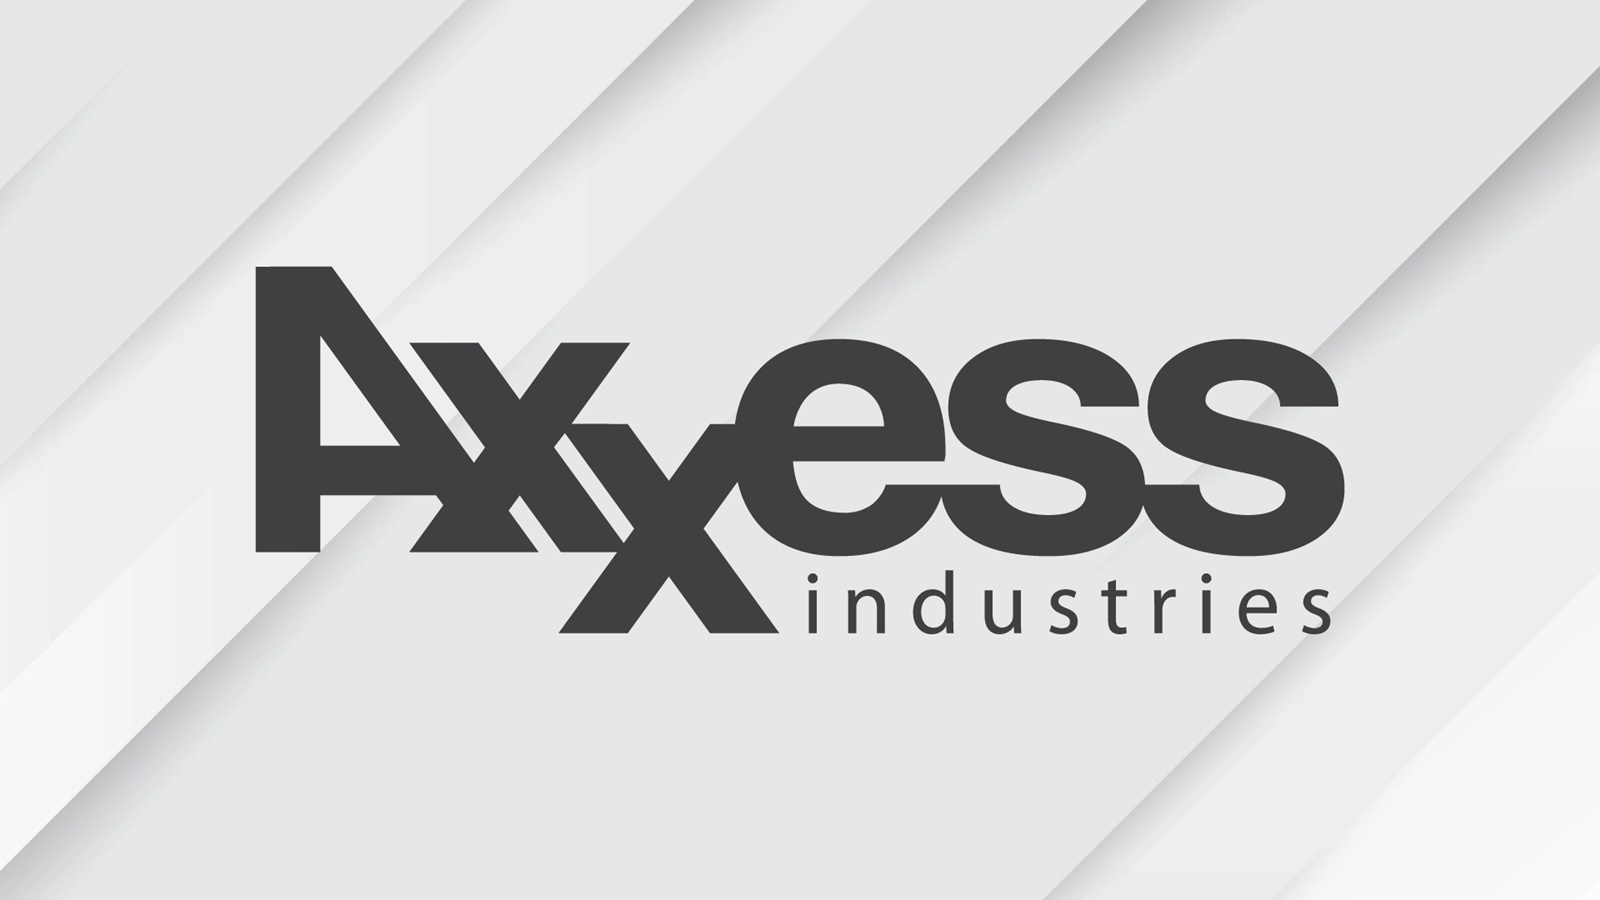 Axxess Industries